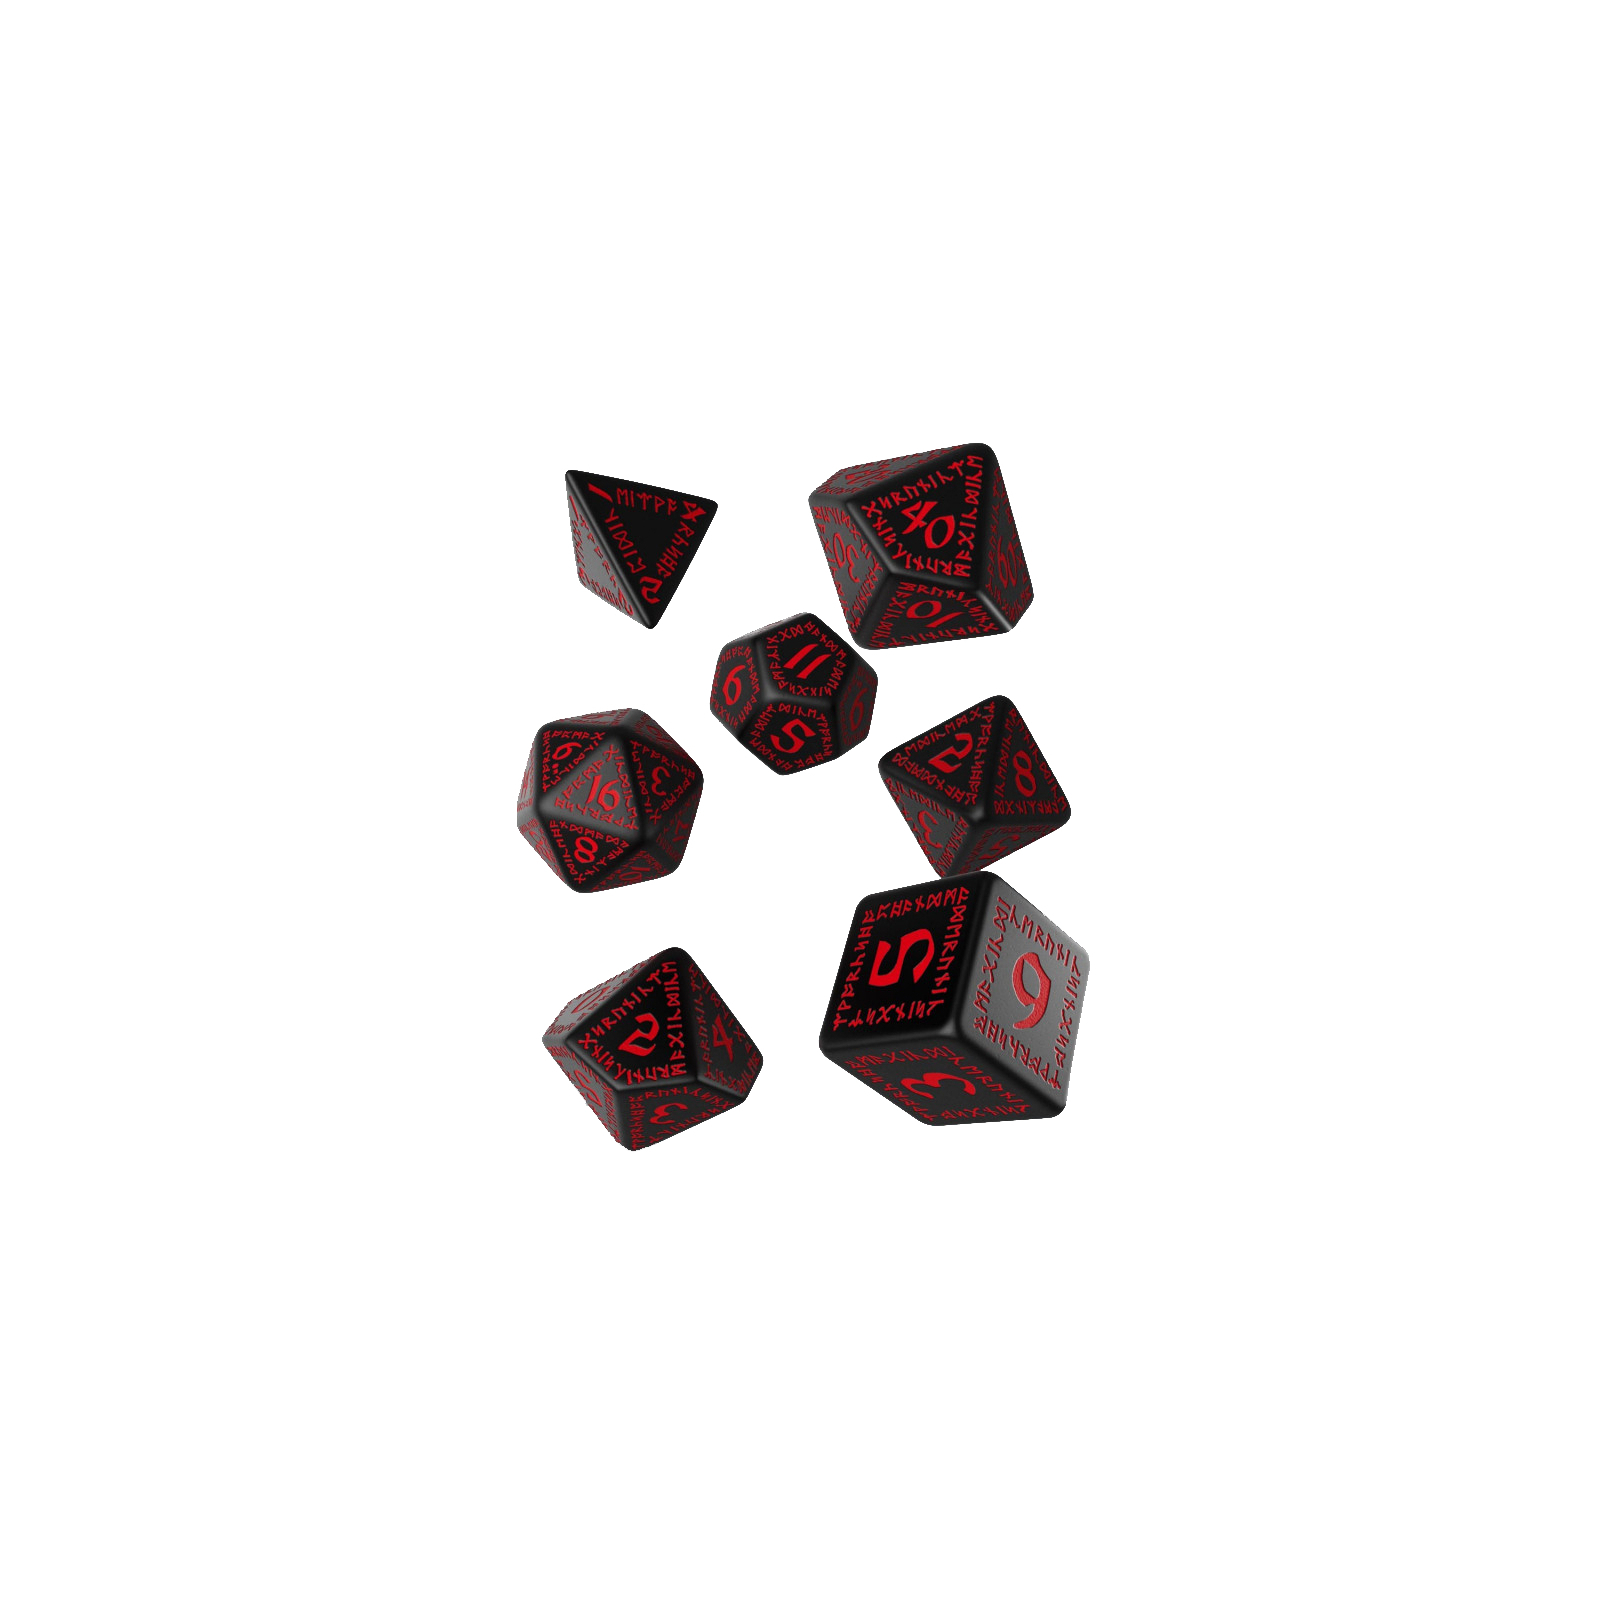 Набор кубиков для настольных игр Q-Workshop Runic Black red Dice Set (7 шт) (SRUN06)